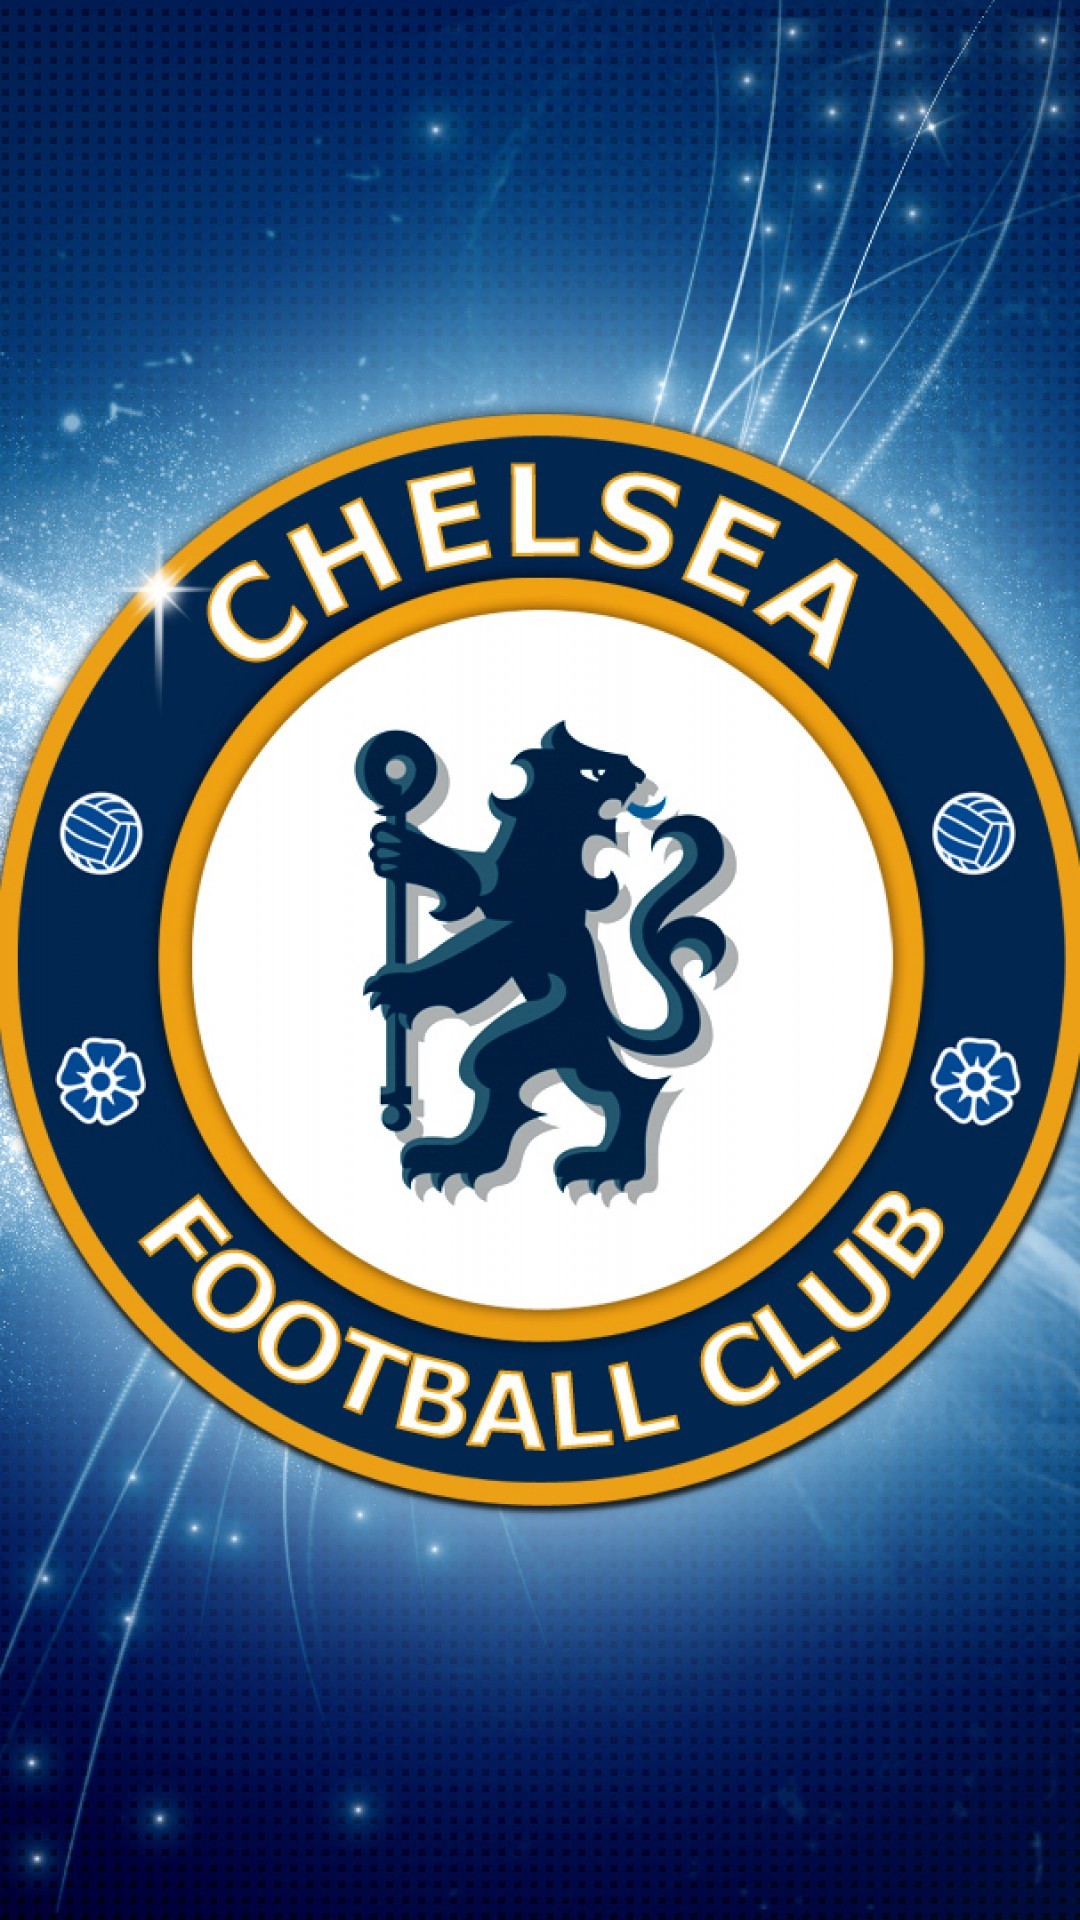 첼시 축구 벽지,상징,폰트,문장,상징,배지